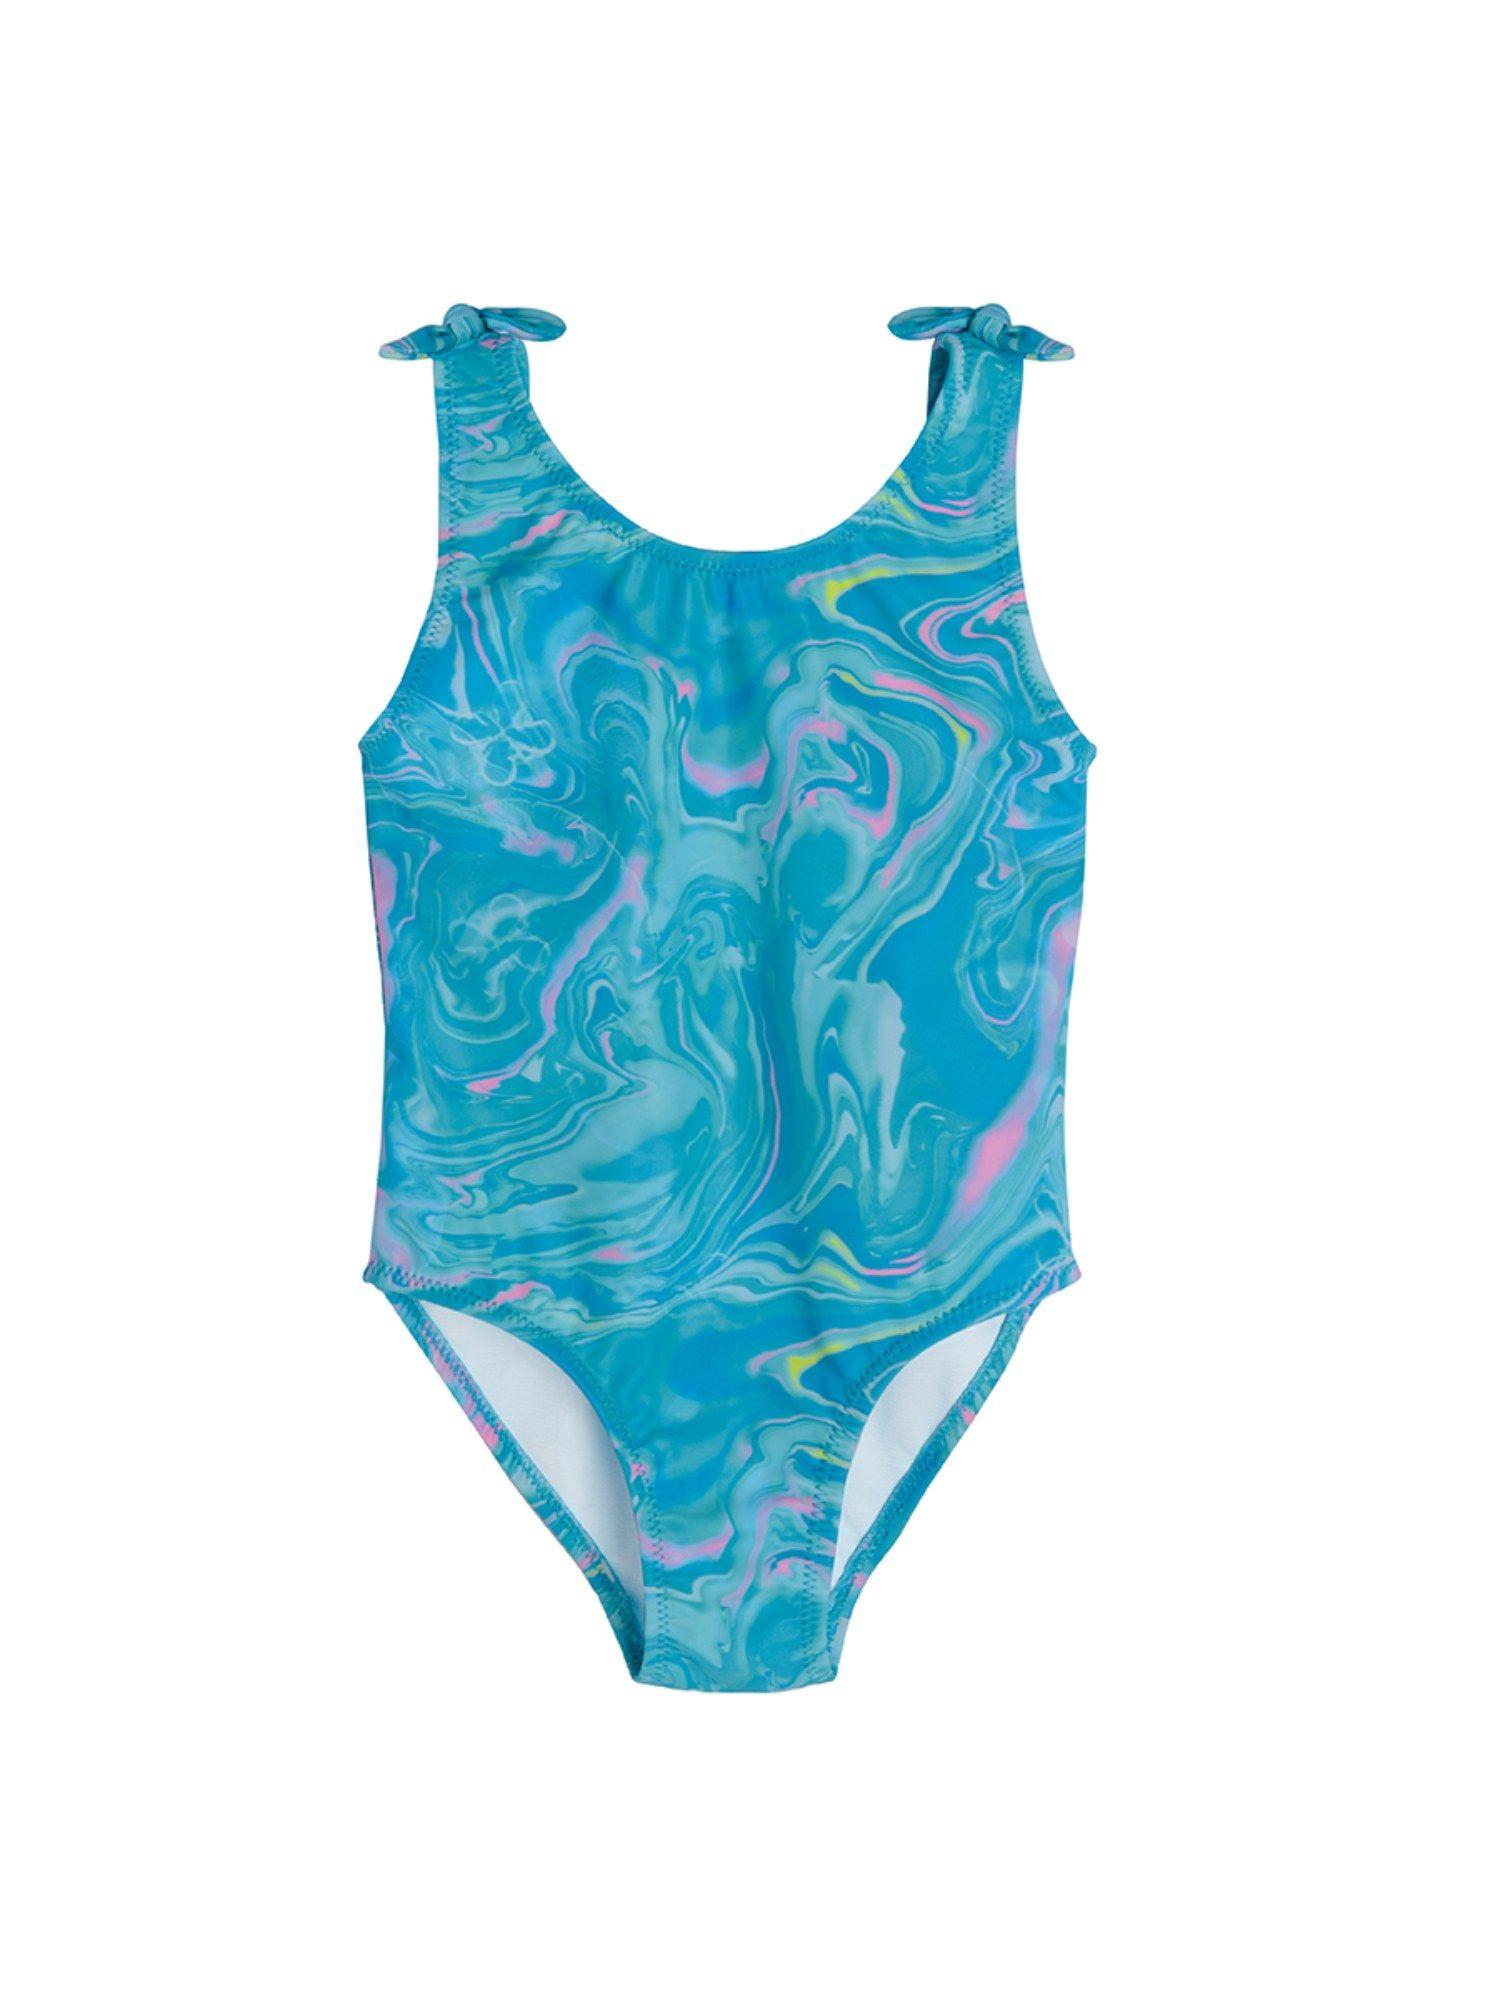 smyk-girls-blue-printed-swimsuit